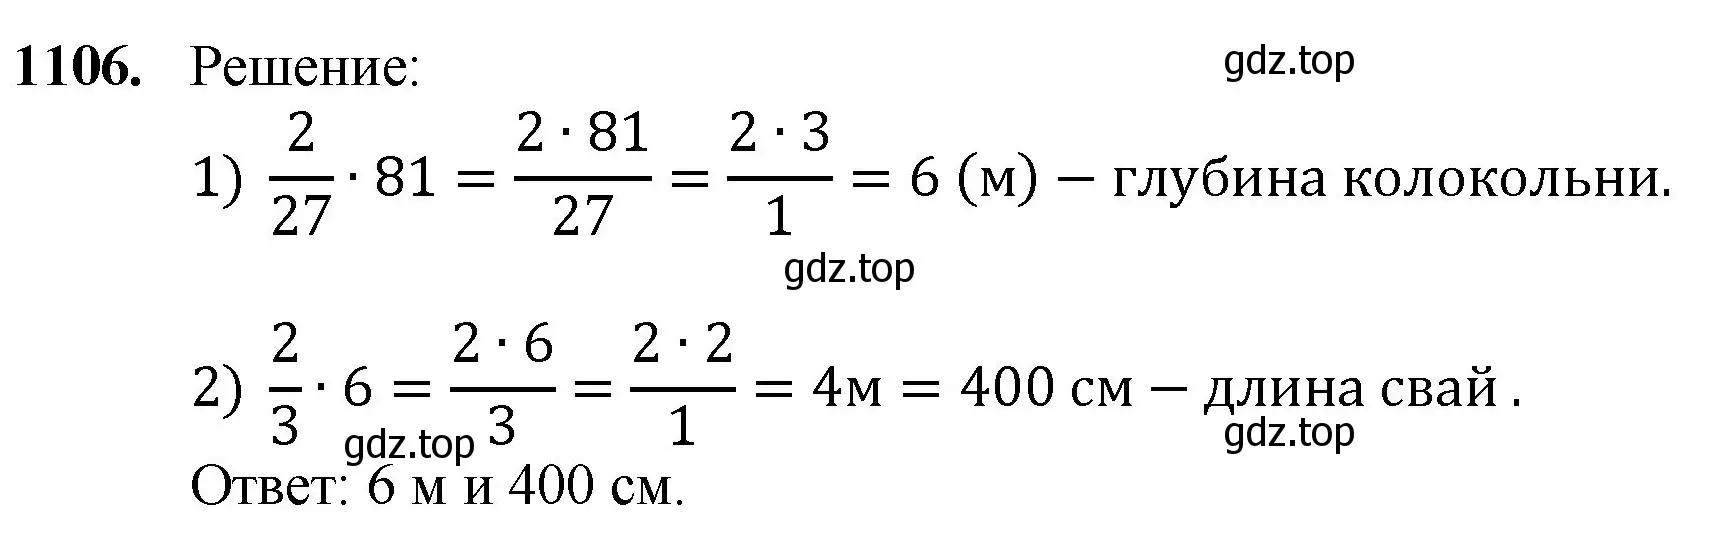 Решение номер 1106 (страница 247) гдз по математике 5 класс Мерзляк, Полонский, учебник